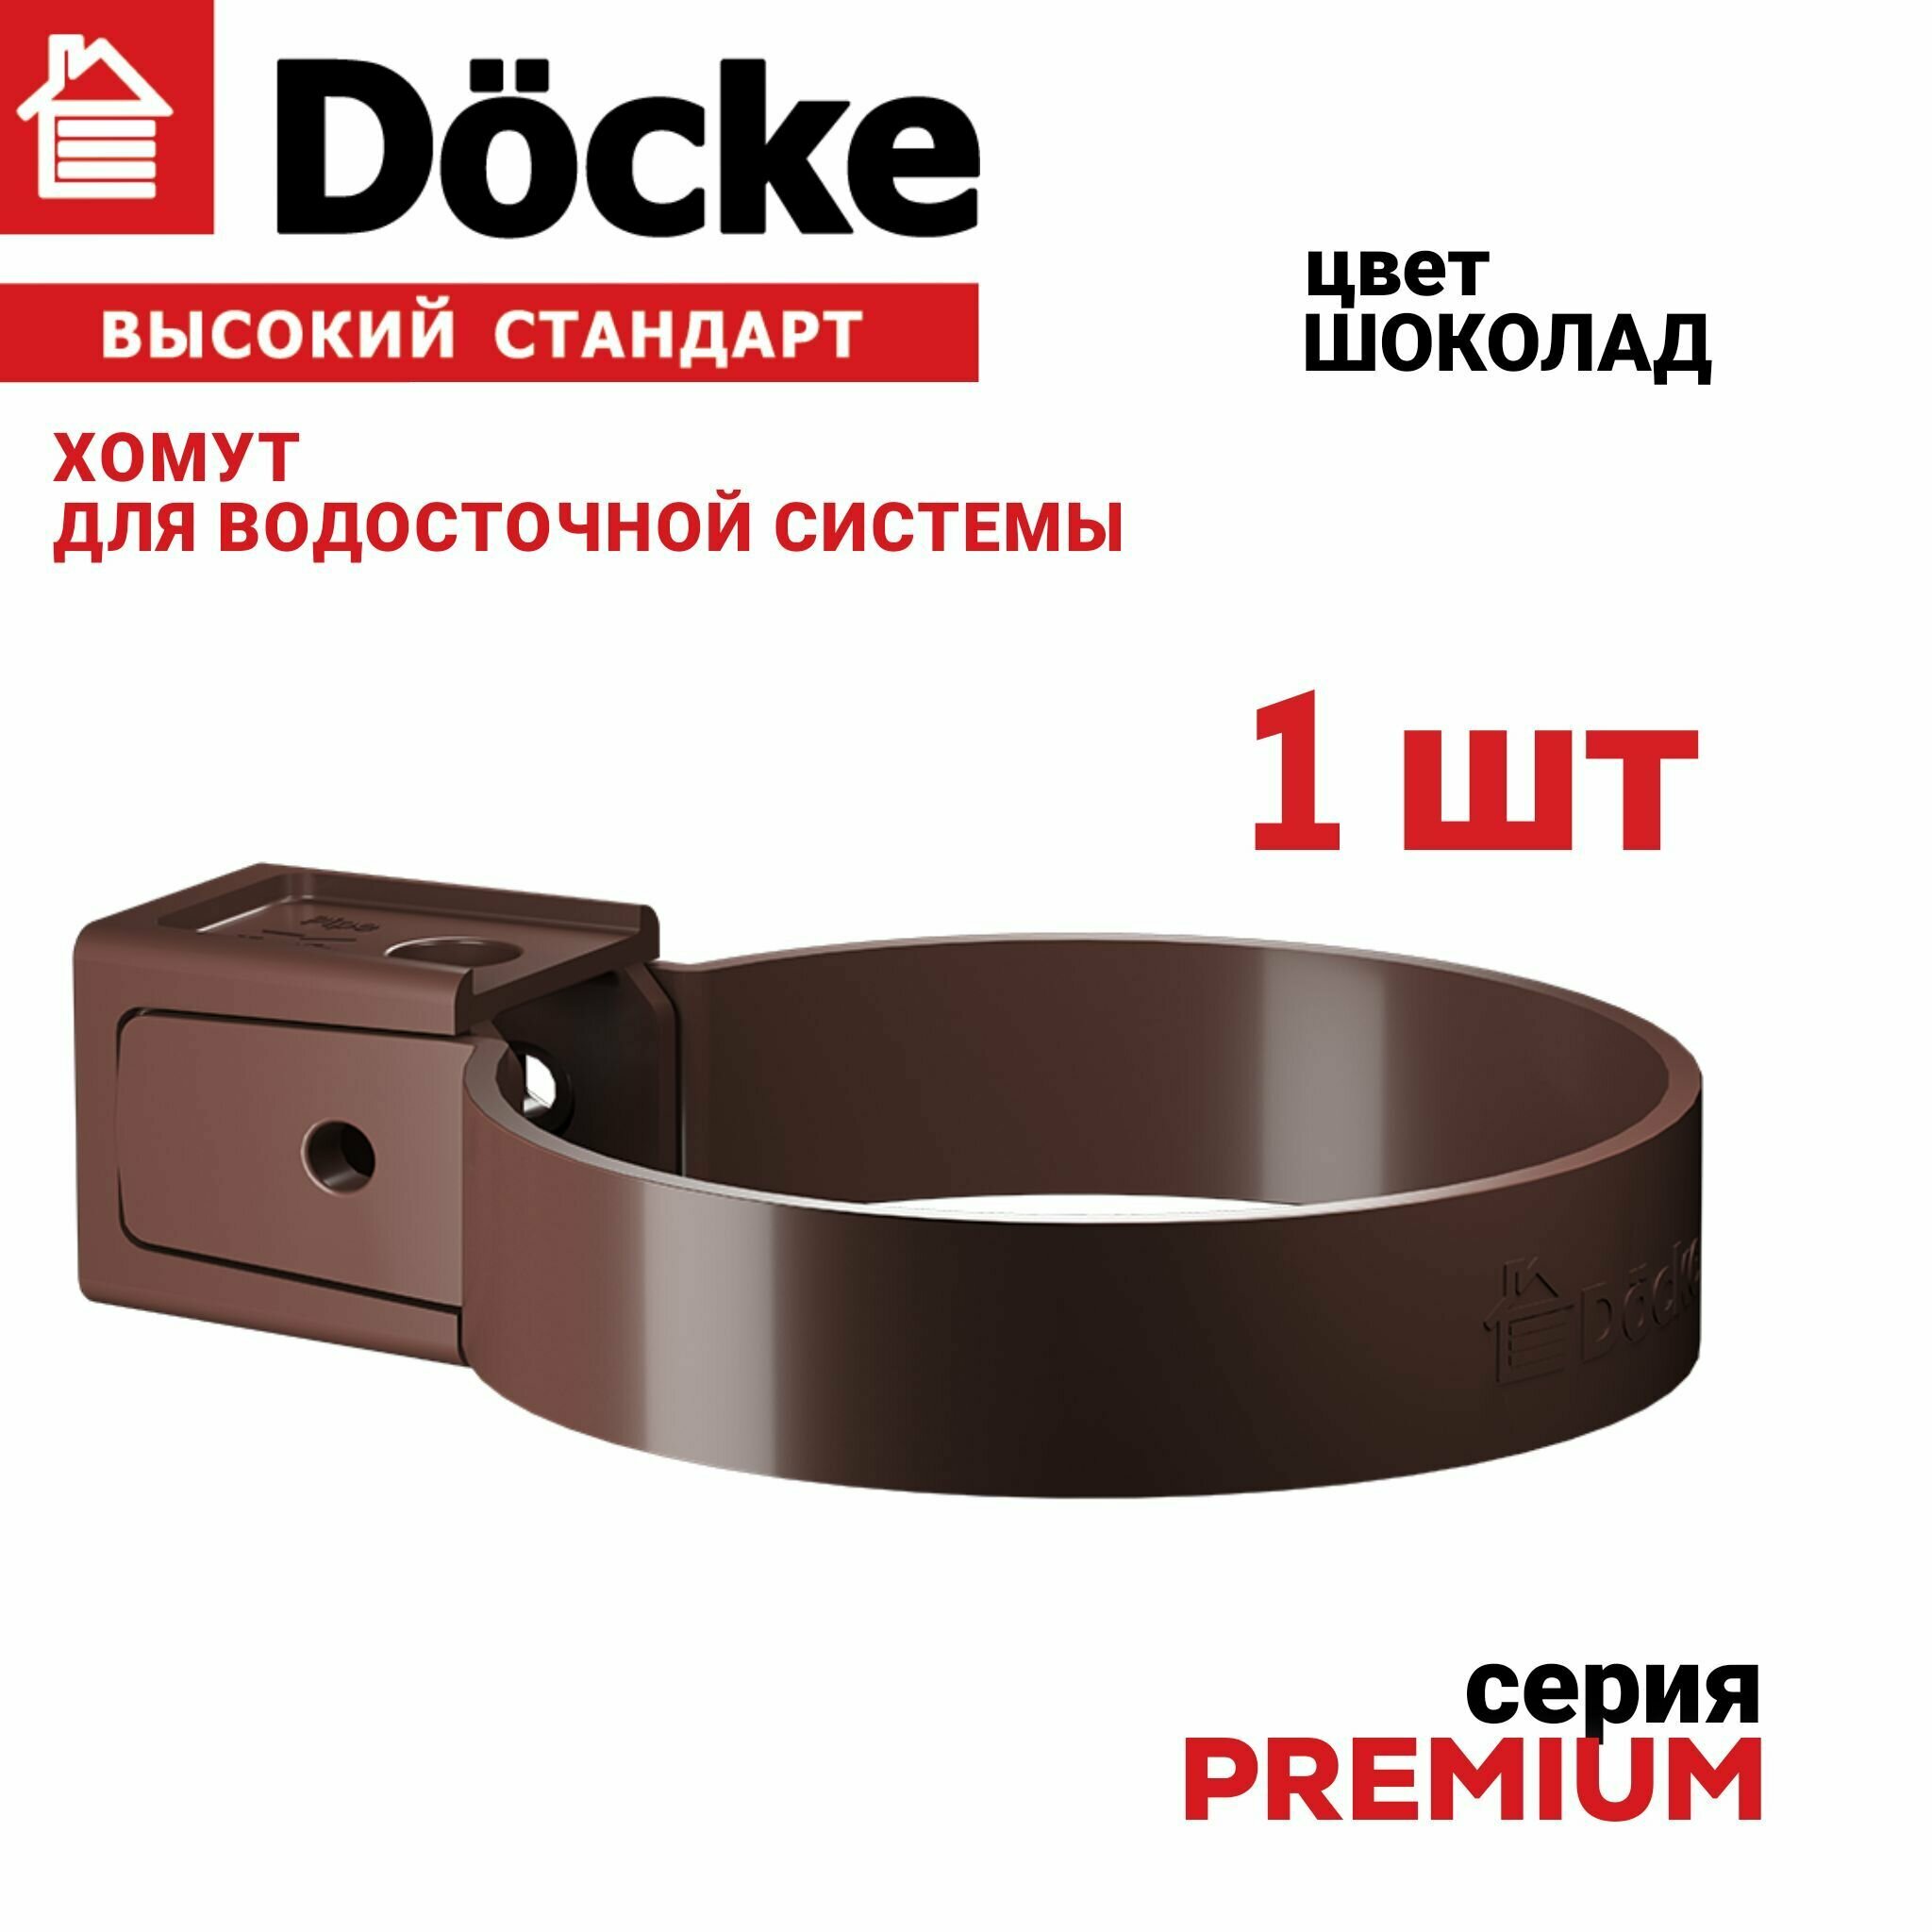 Хомут универсальный Docke Premium (шоколад) 1 шт Крепление элементов водосточной системы на фасаде здания